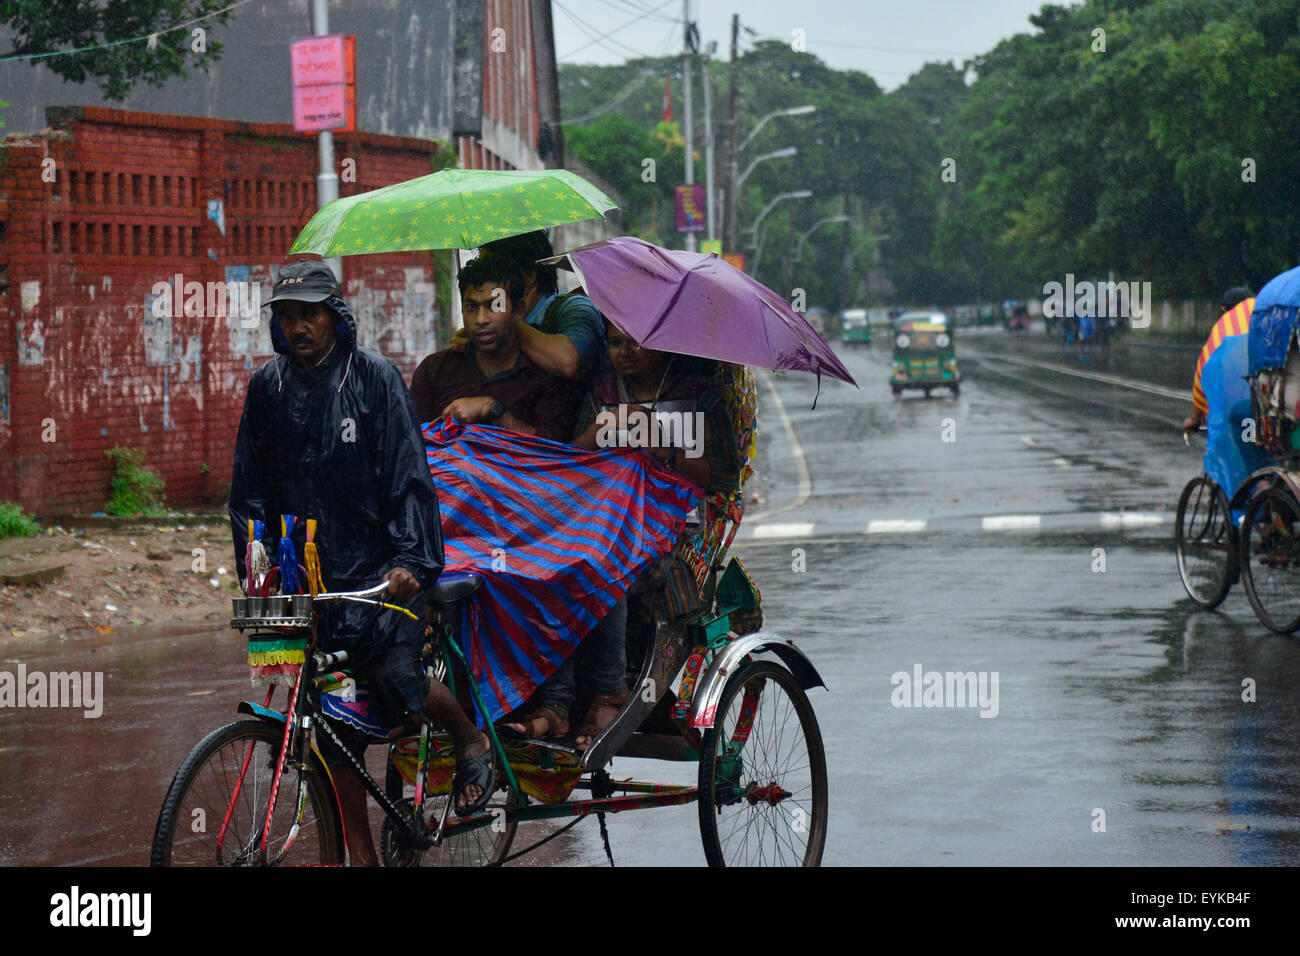 Dhaka, Bangladesh. El 31 de julio de 2015. Pedal de conductores de rickshaw de Bangladesh sus vehículos a través de la tromba de agua causada por el debilitamiento de la tormenta tropical "Komen" en Dhaka, Bangladesh. El 31 de julio de 2015 Continua la lluvia moderada con gusty viento es probable que continúe hasta mañana causada por el debilitamiento de la tormenta tropical "Komen" en Dhaka y en otras partes del país, de acuerdo a Dhaka met office previsión. Crédito: Mamunur Rashid/Alamy Live News Foto de stock